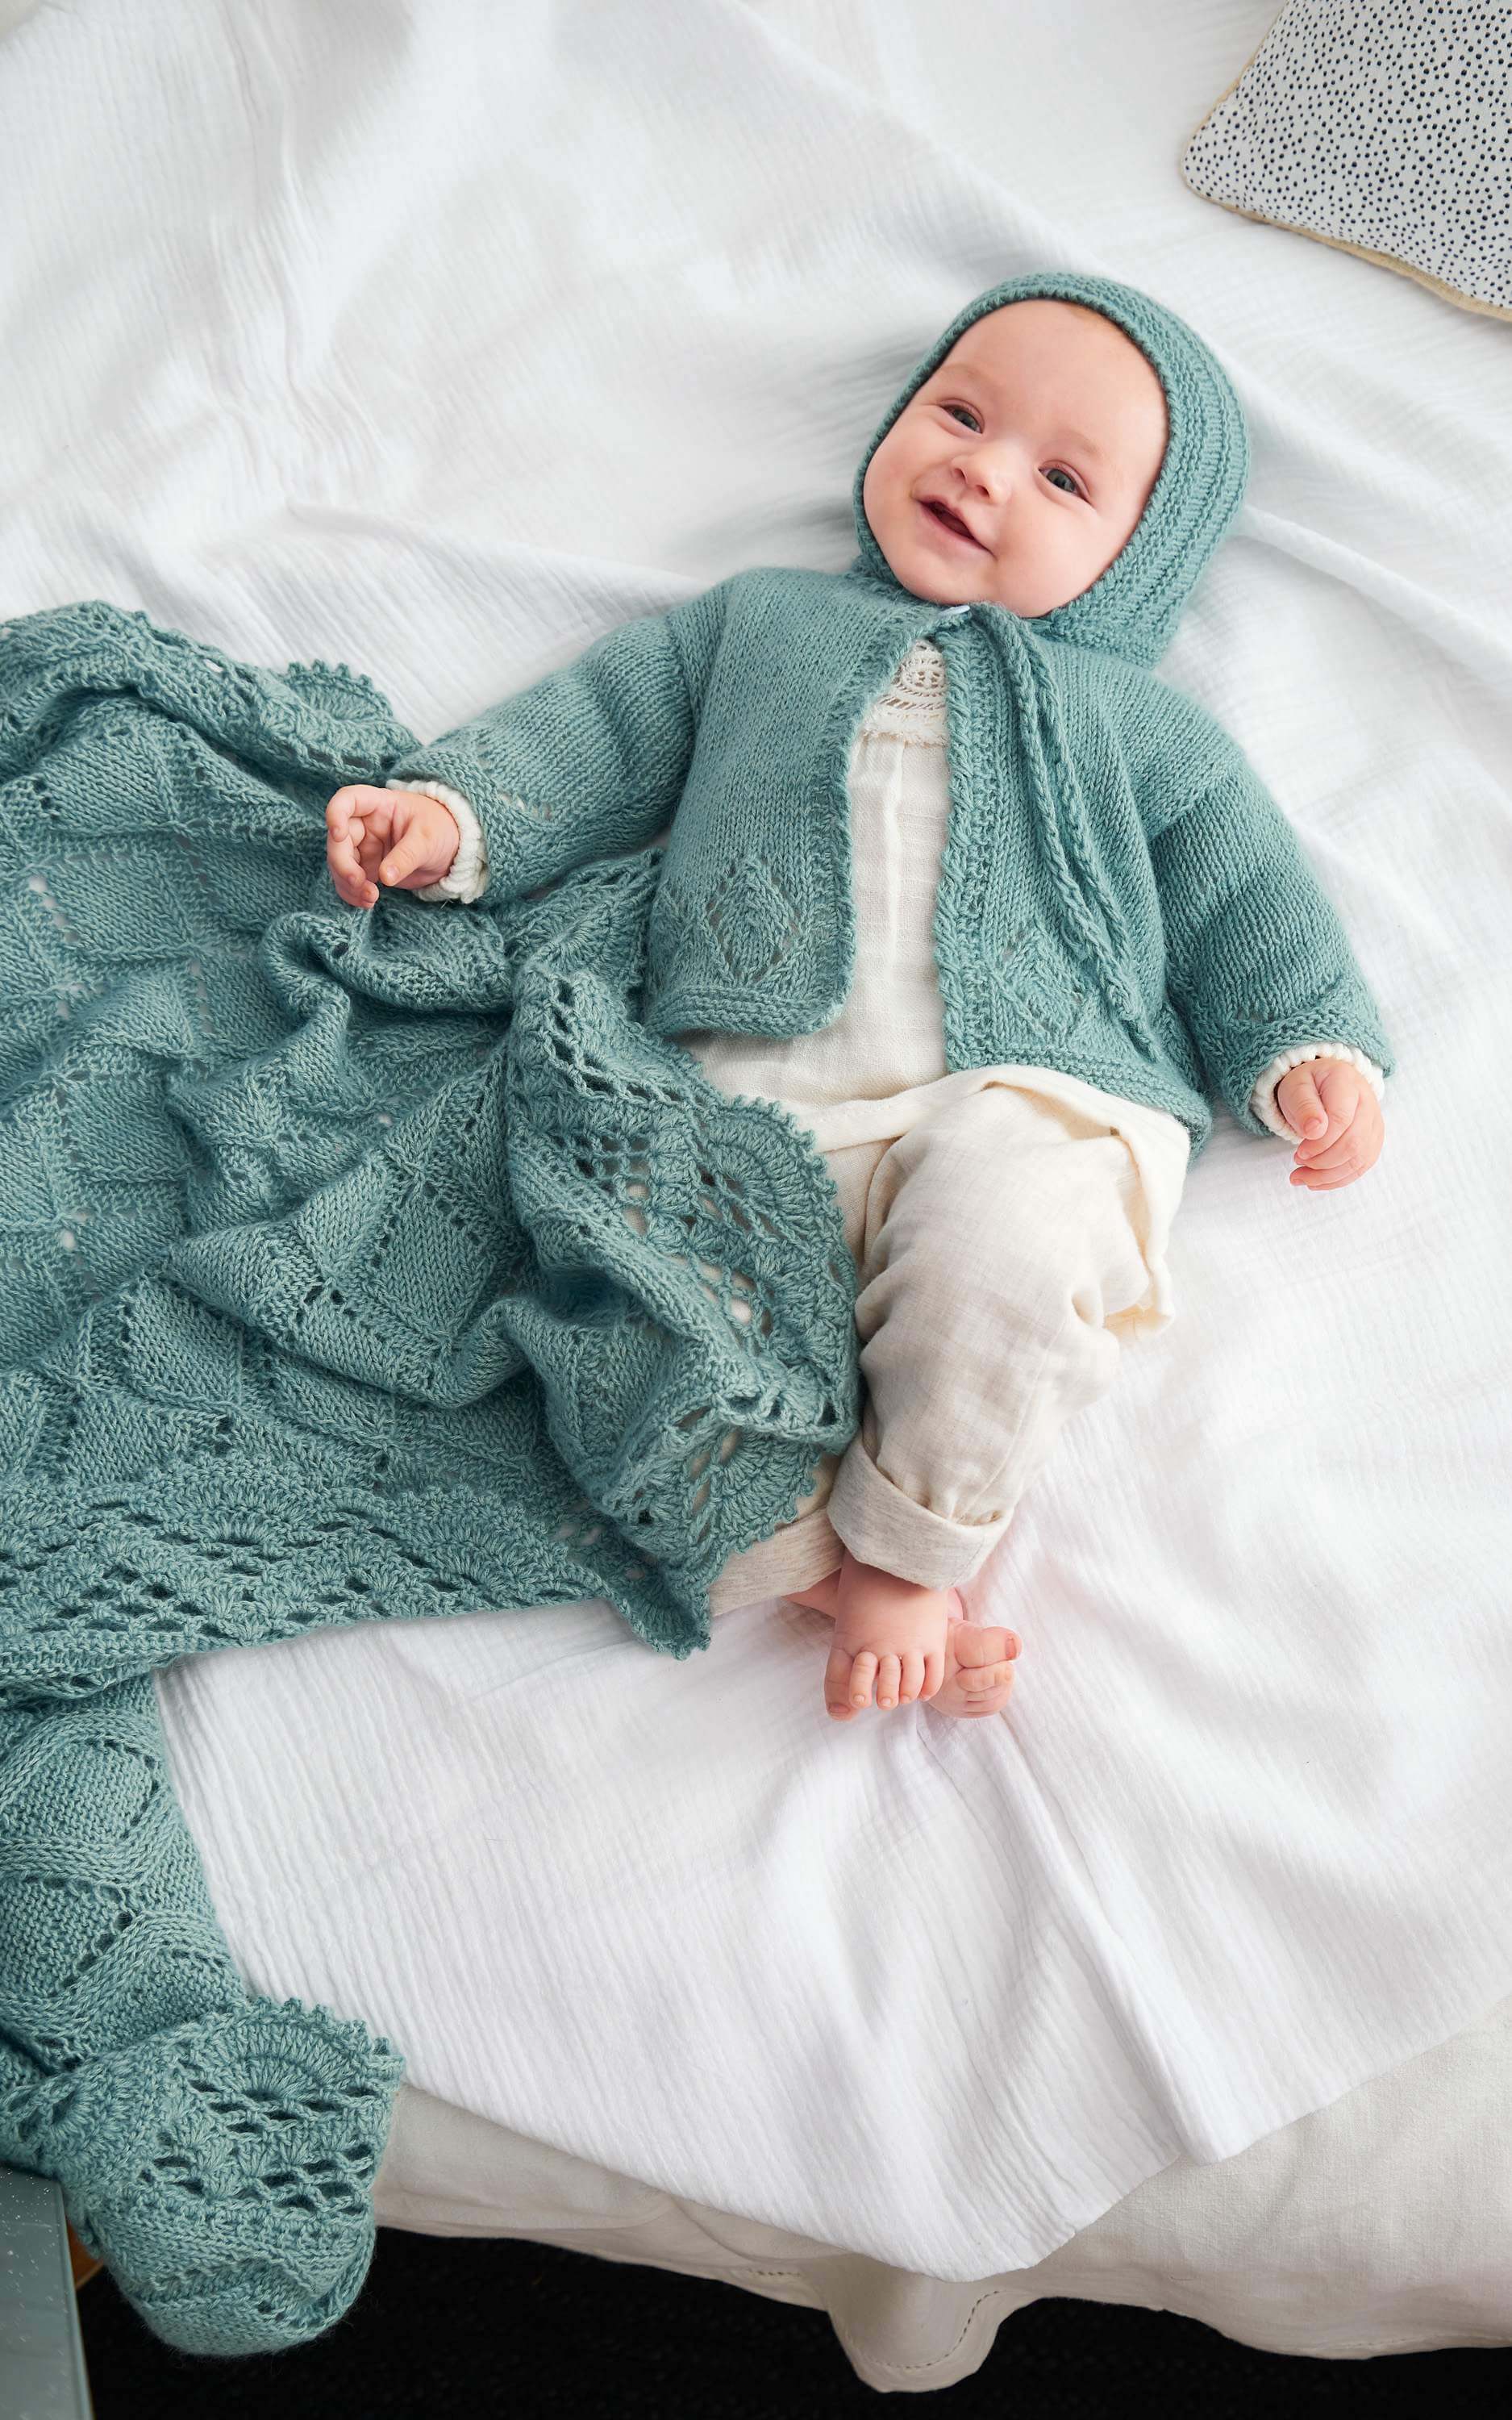 Baby Decke mit Ajourmuster und Häkelbordüre - Strickset von LANA GROSSA jetzt online kaufen bei OONIQUE